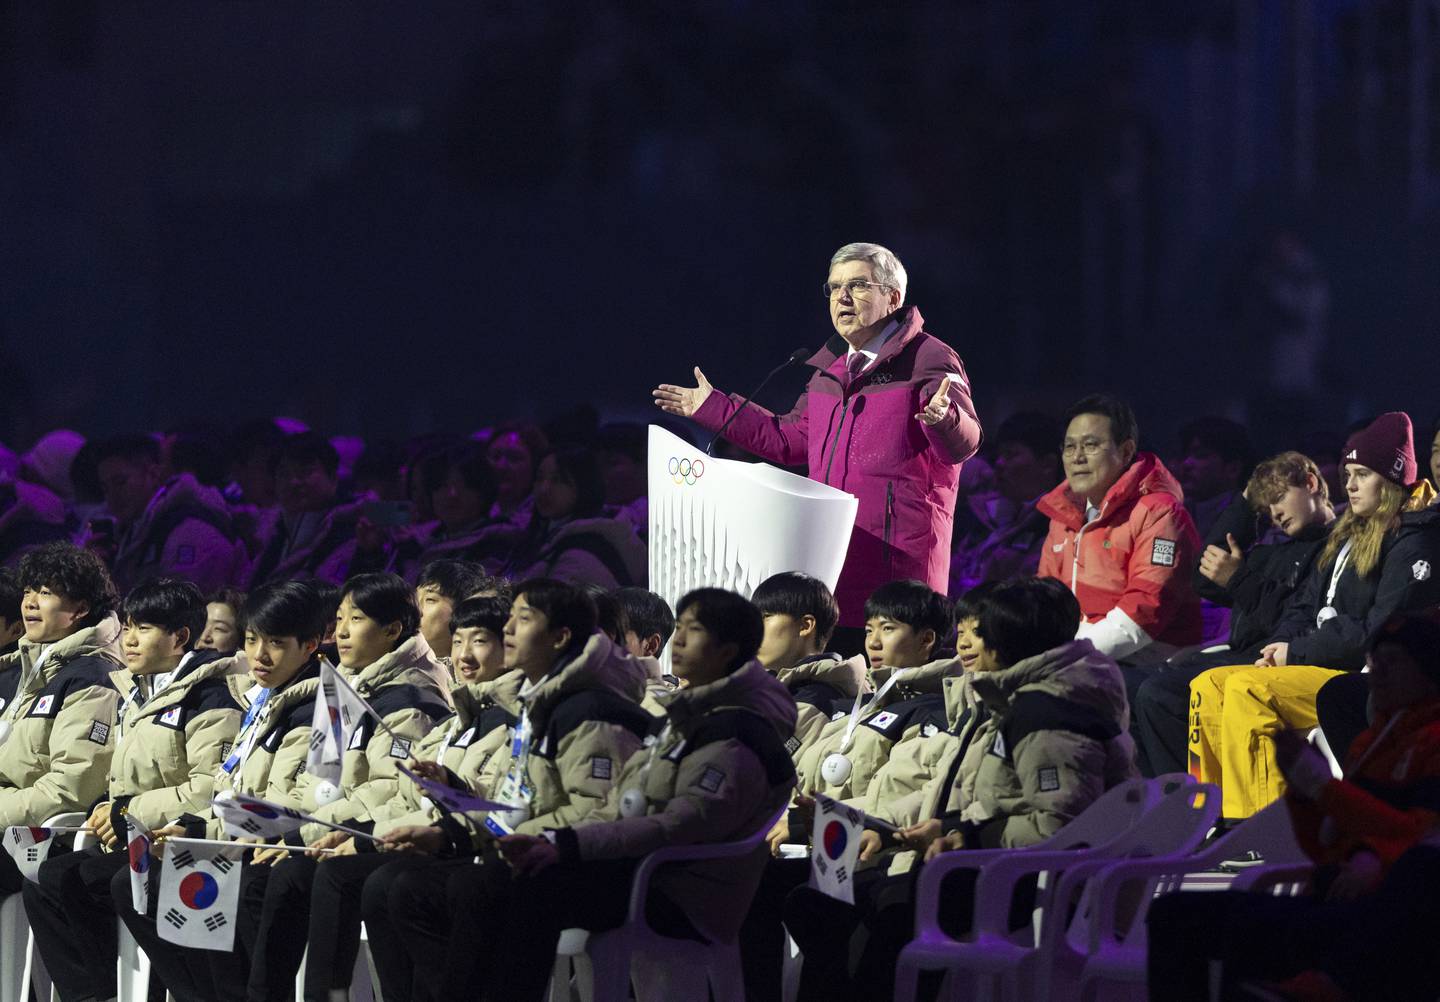 Akkurat nå pågår vinter-ungdoms-OL i Gangwon i Sør-Korea. IOC-president Thomas Bach åpnet lekene.